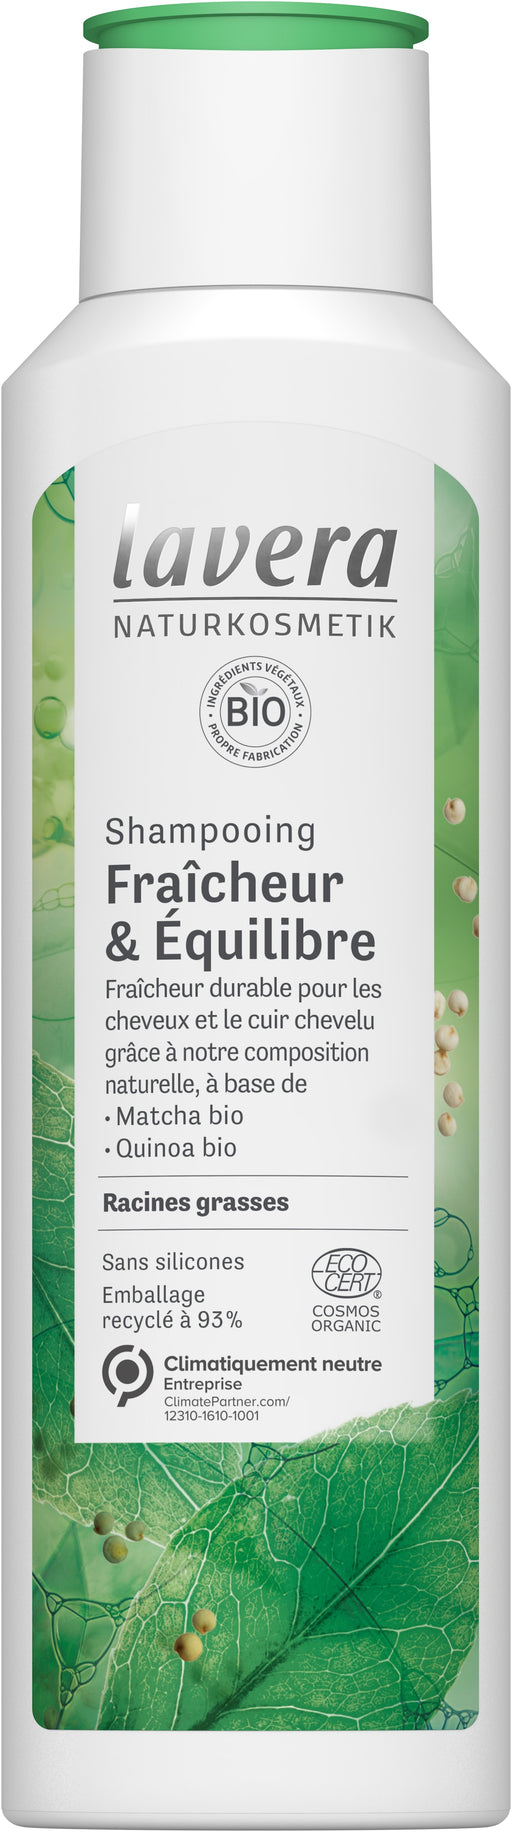 Shampooing Fraîcheur & Équilibre